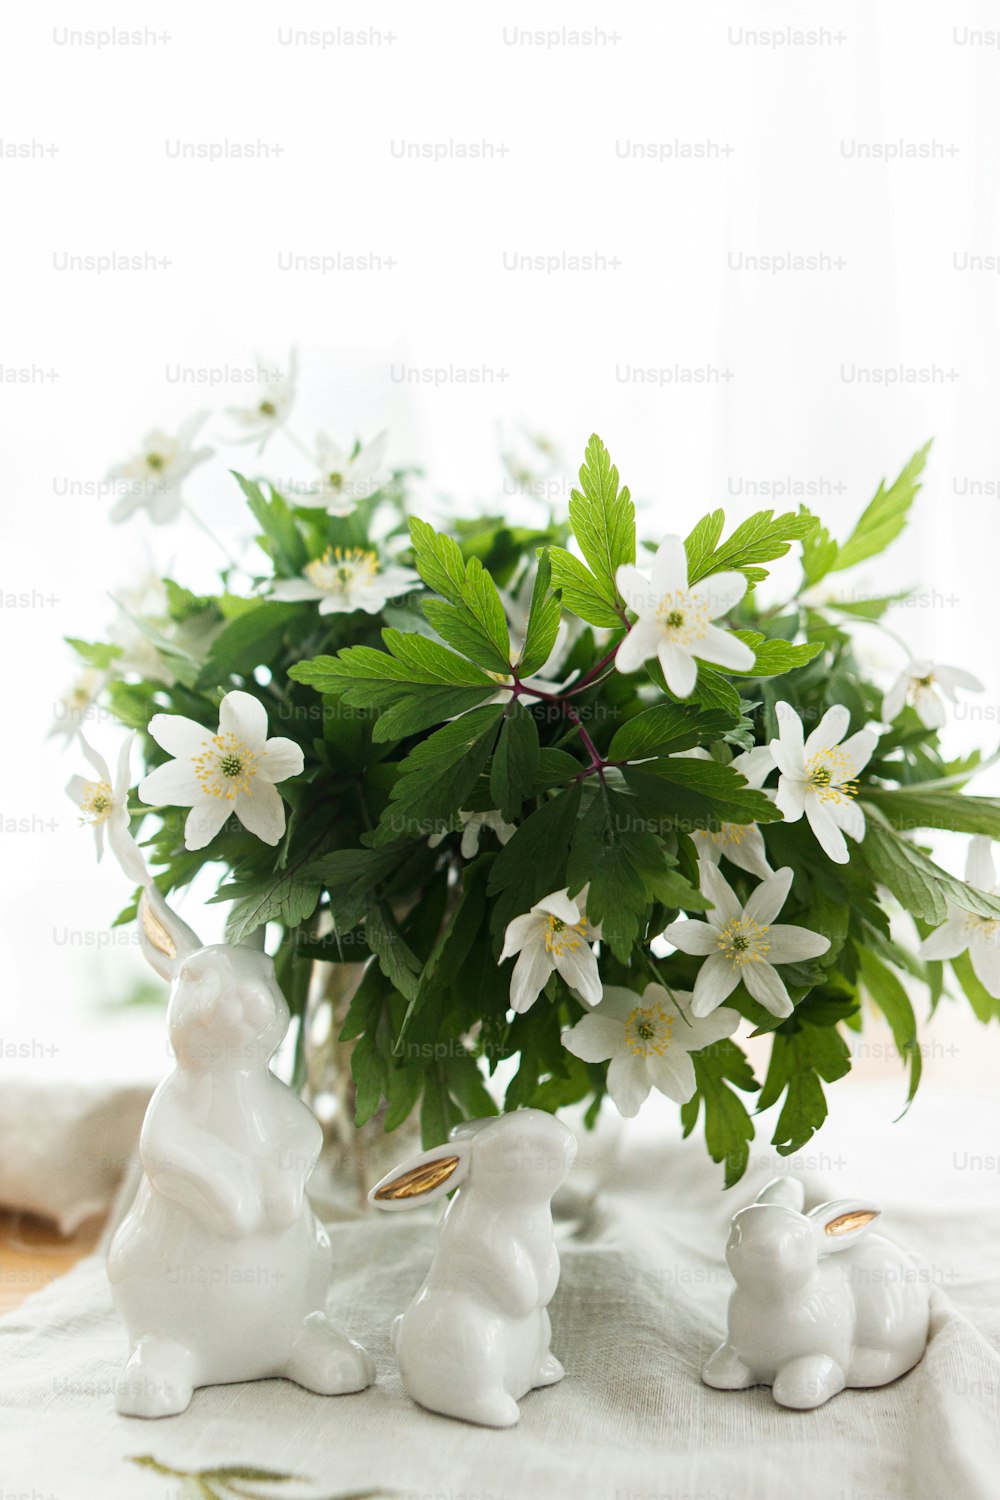 귀여운 흰 토끼와 봄 꽃이 부드러운 빛의 소박한 테이블에 린넨 천 냅킨에 있습니다. 행복한 부활절! 부활절 사냥 개념입니다. 흰 토끼 인형과 피는 아네모네 꽃 시골 정물